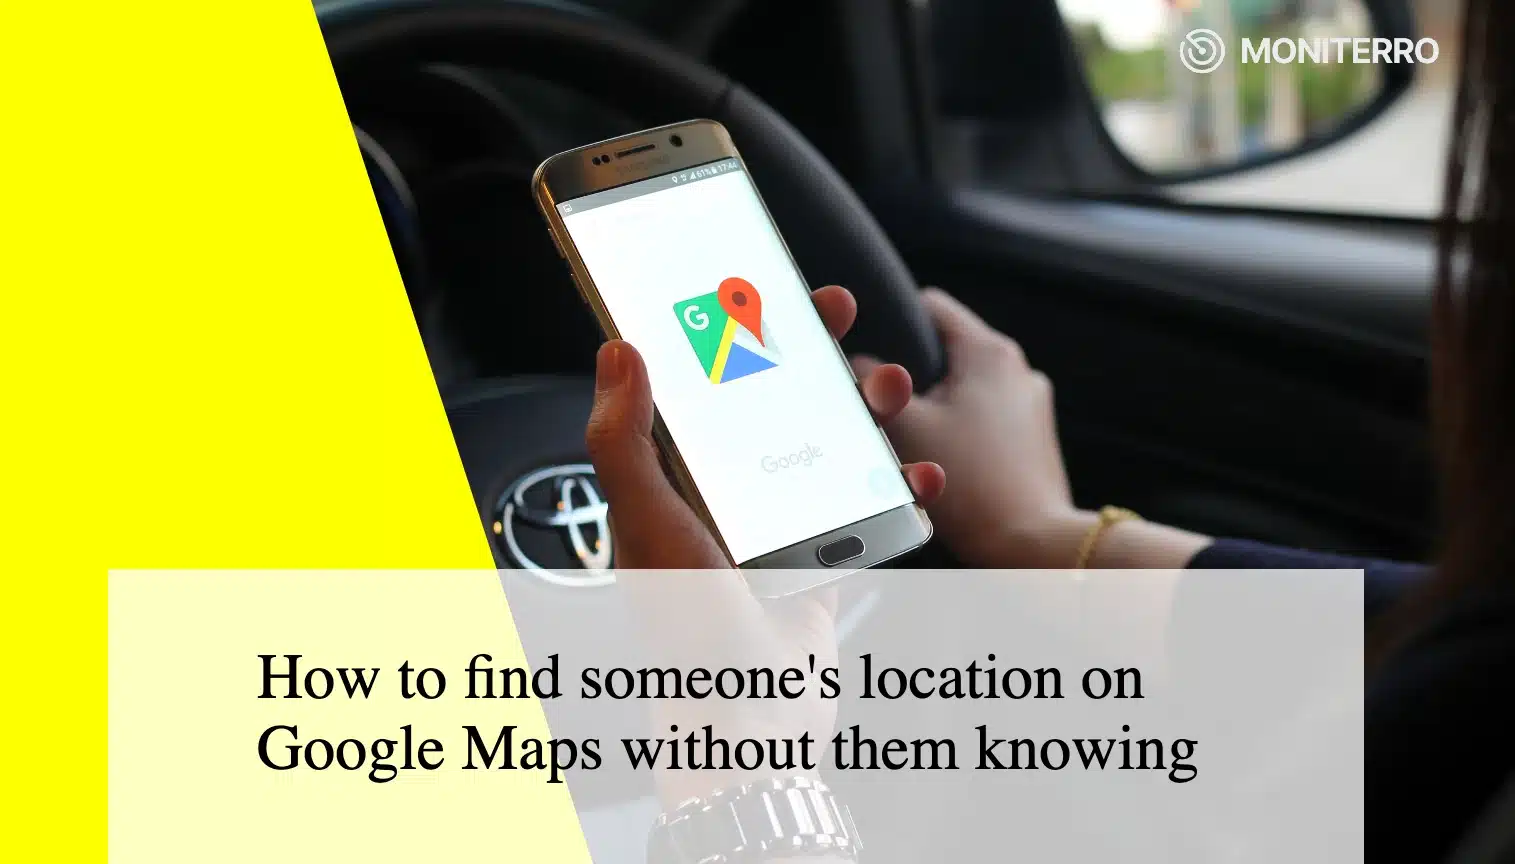 Cum să găsești locația cuiva's pe Google Maps fără ca acesta să știe